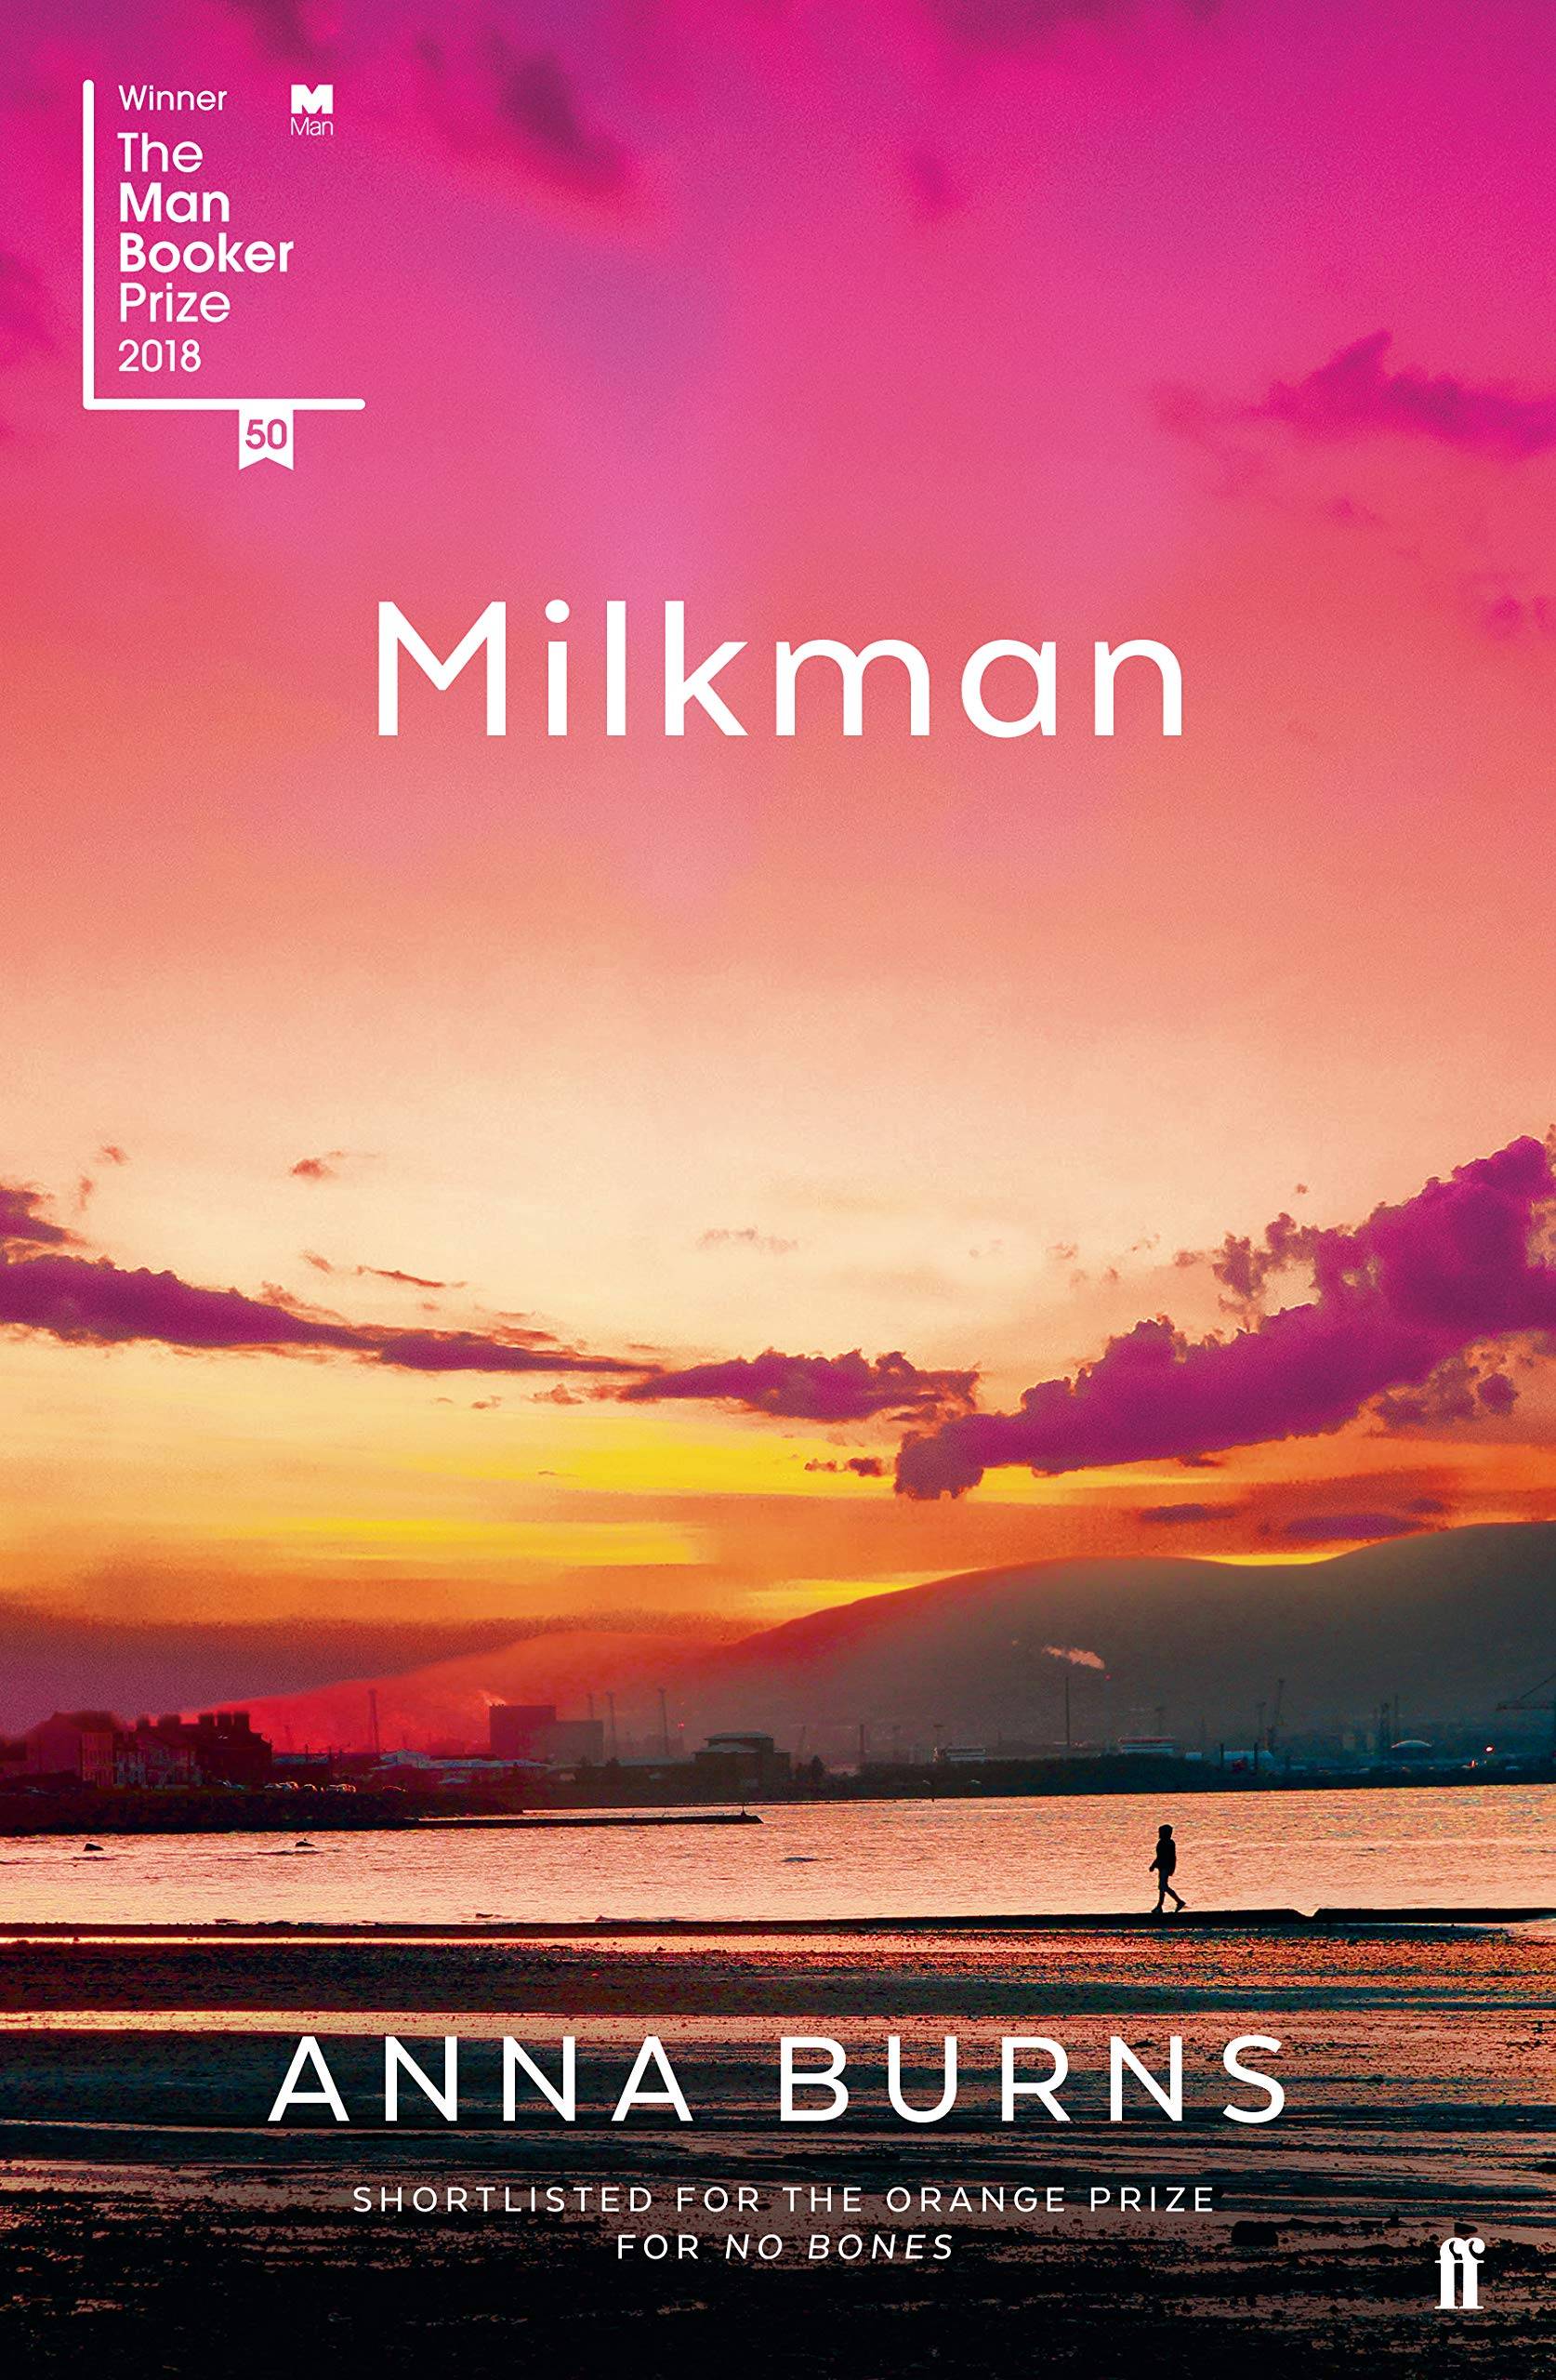 Milkman book cover